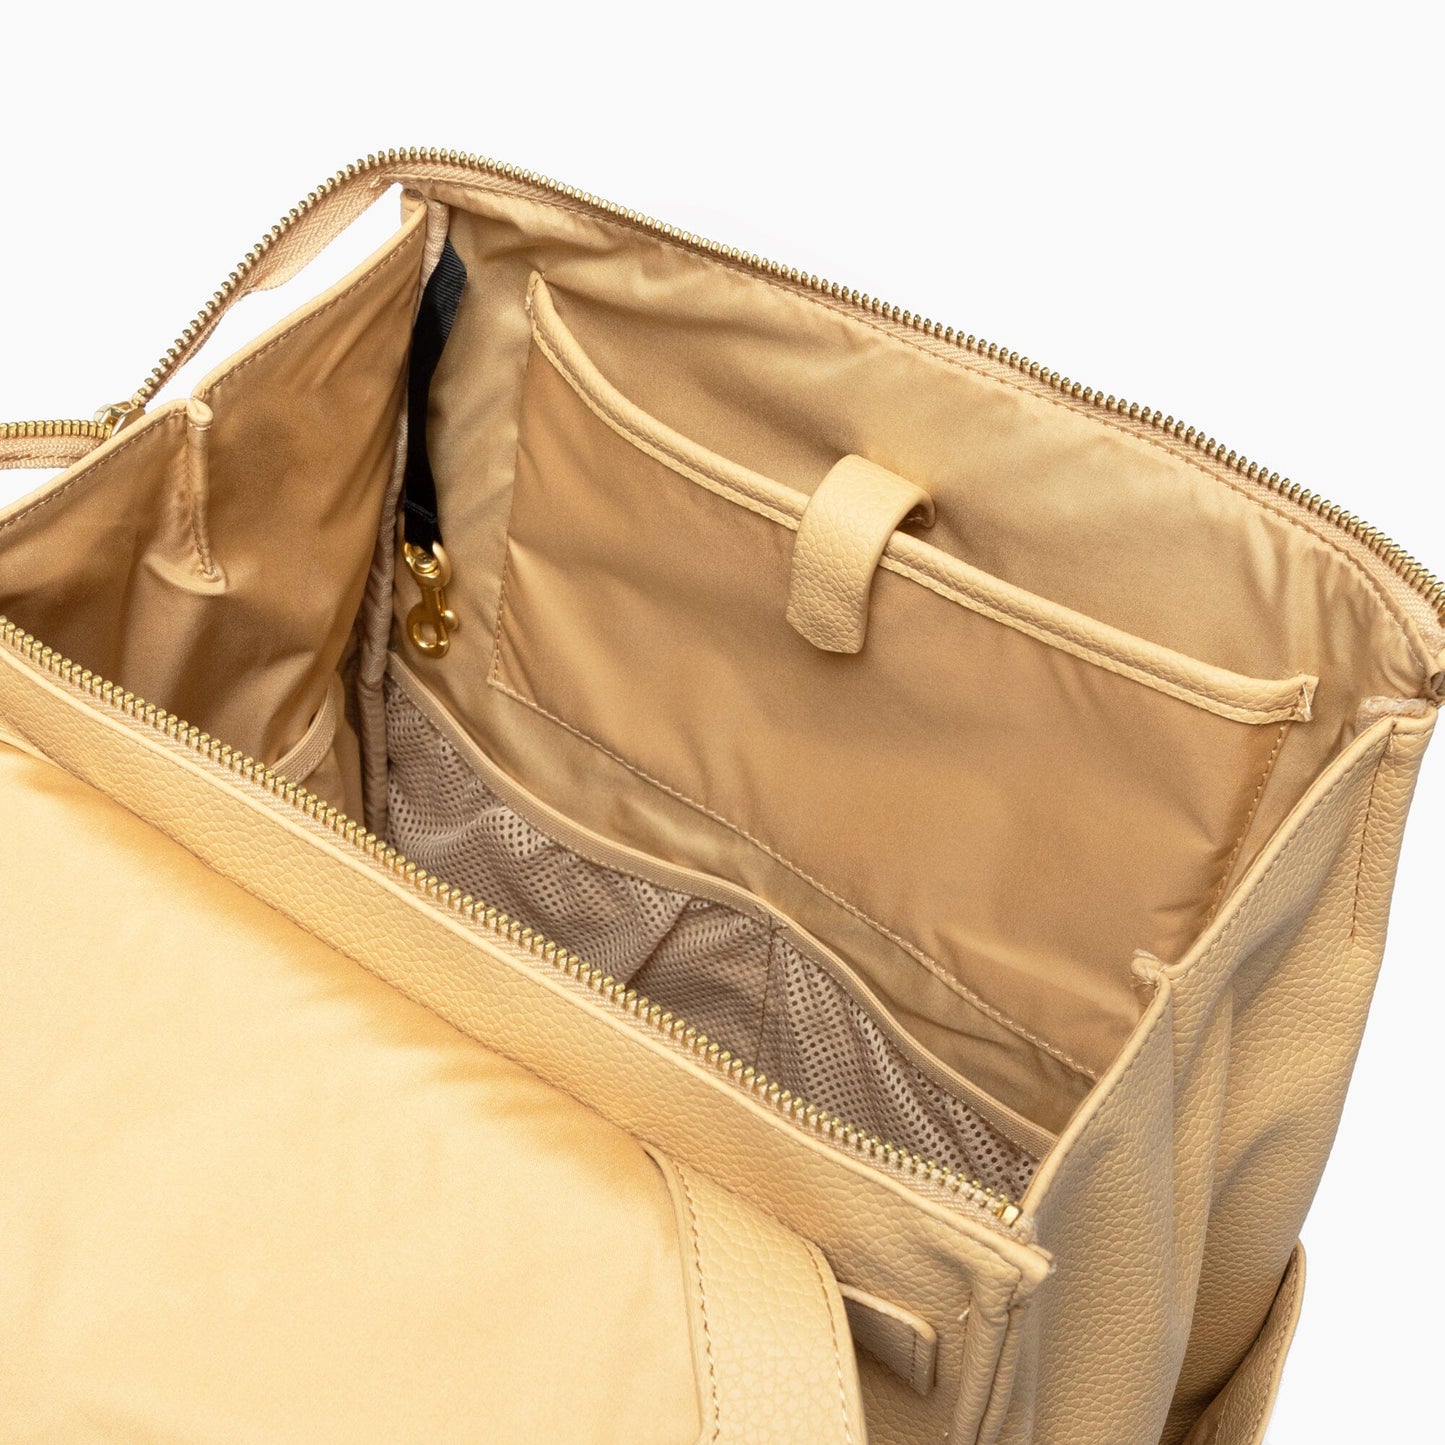 Prosecco Classic Diaper Bag II Classic Diaper Bag II Diaper Bag 